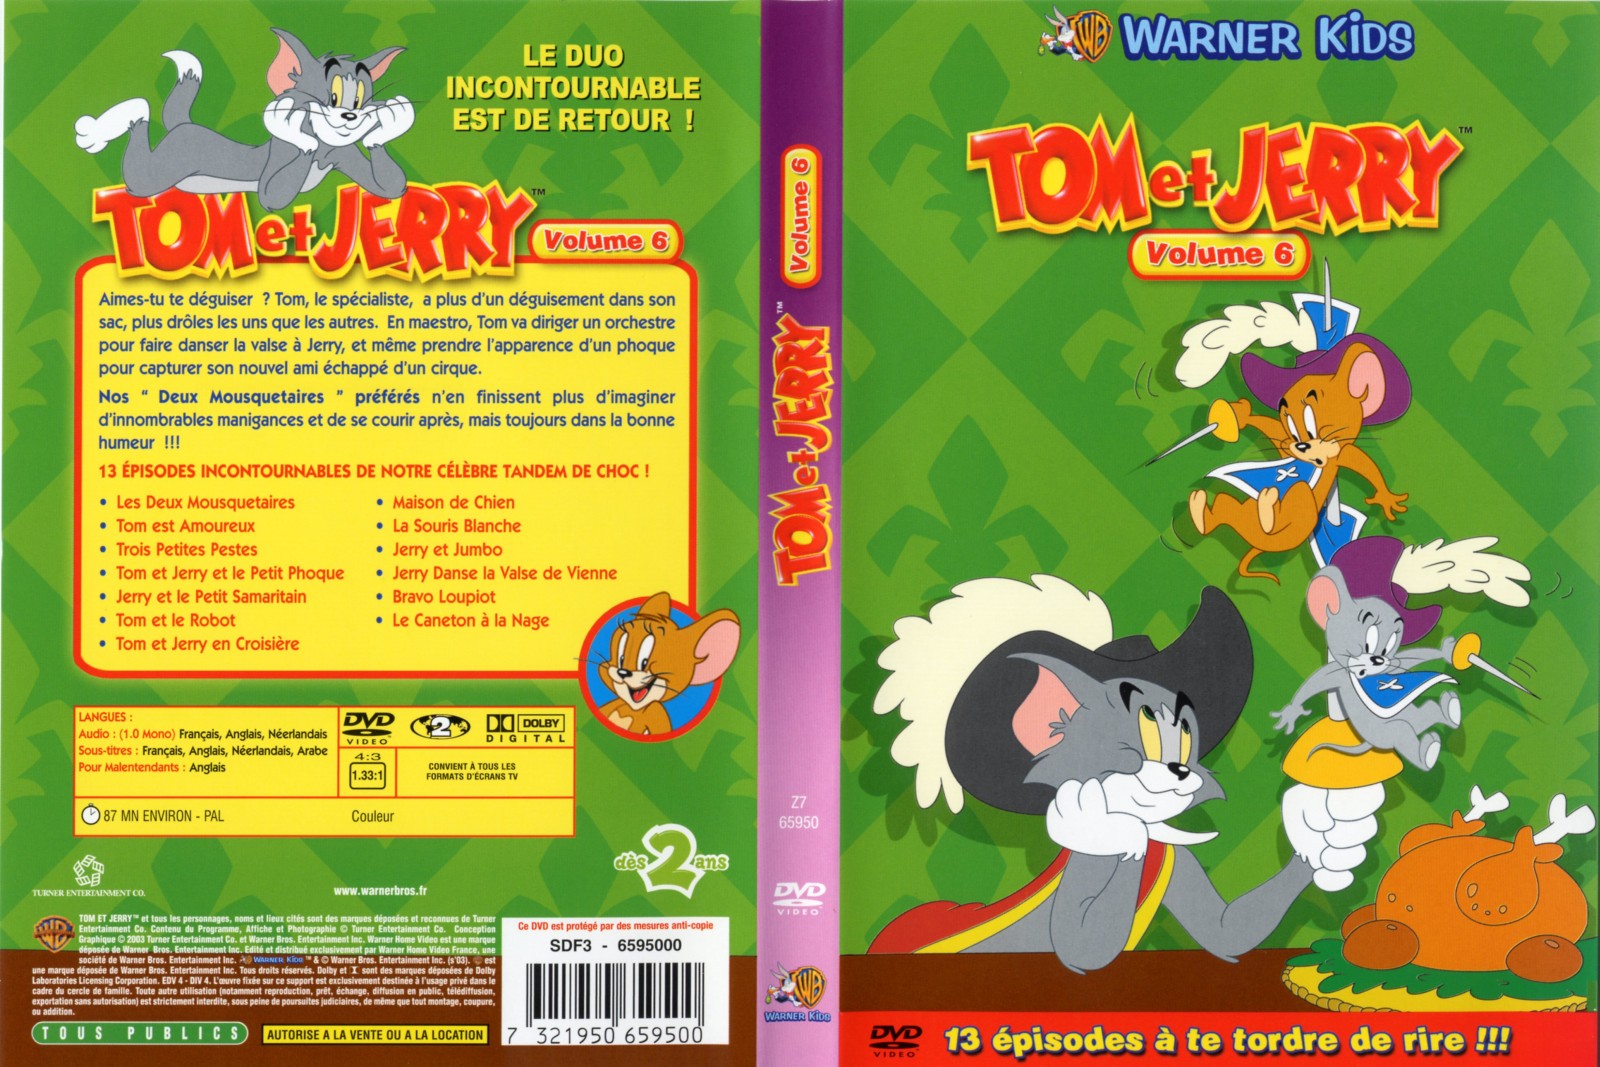 Jaquette DVD Tom et Jerry vol 6